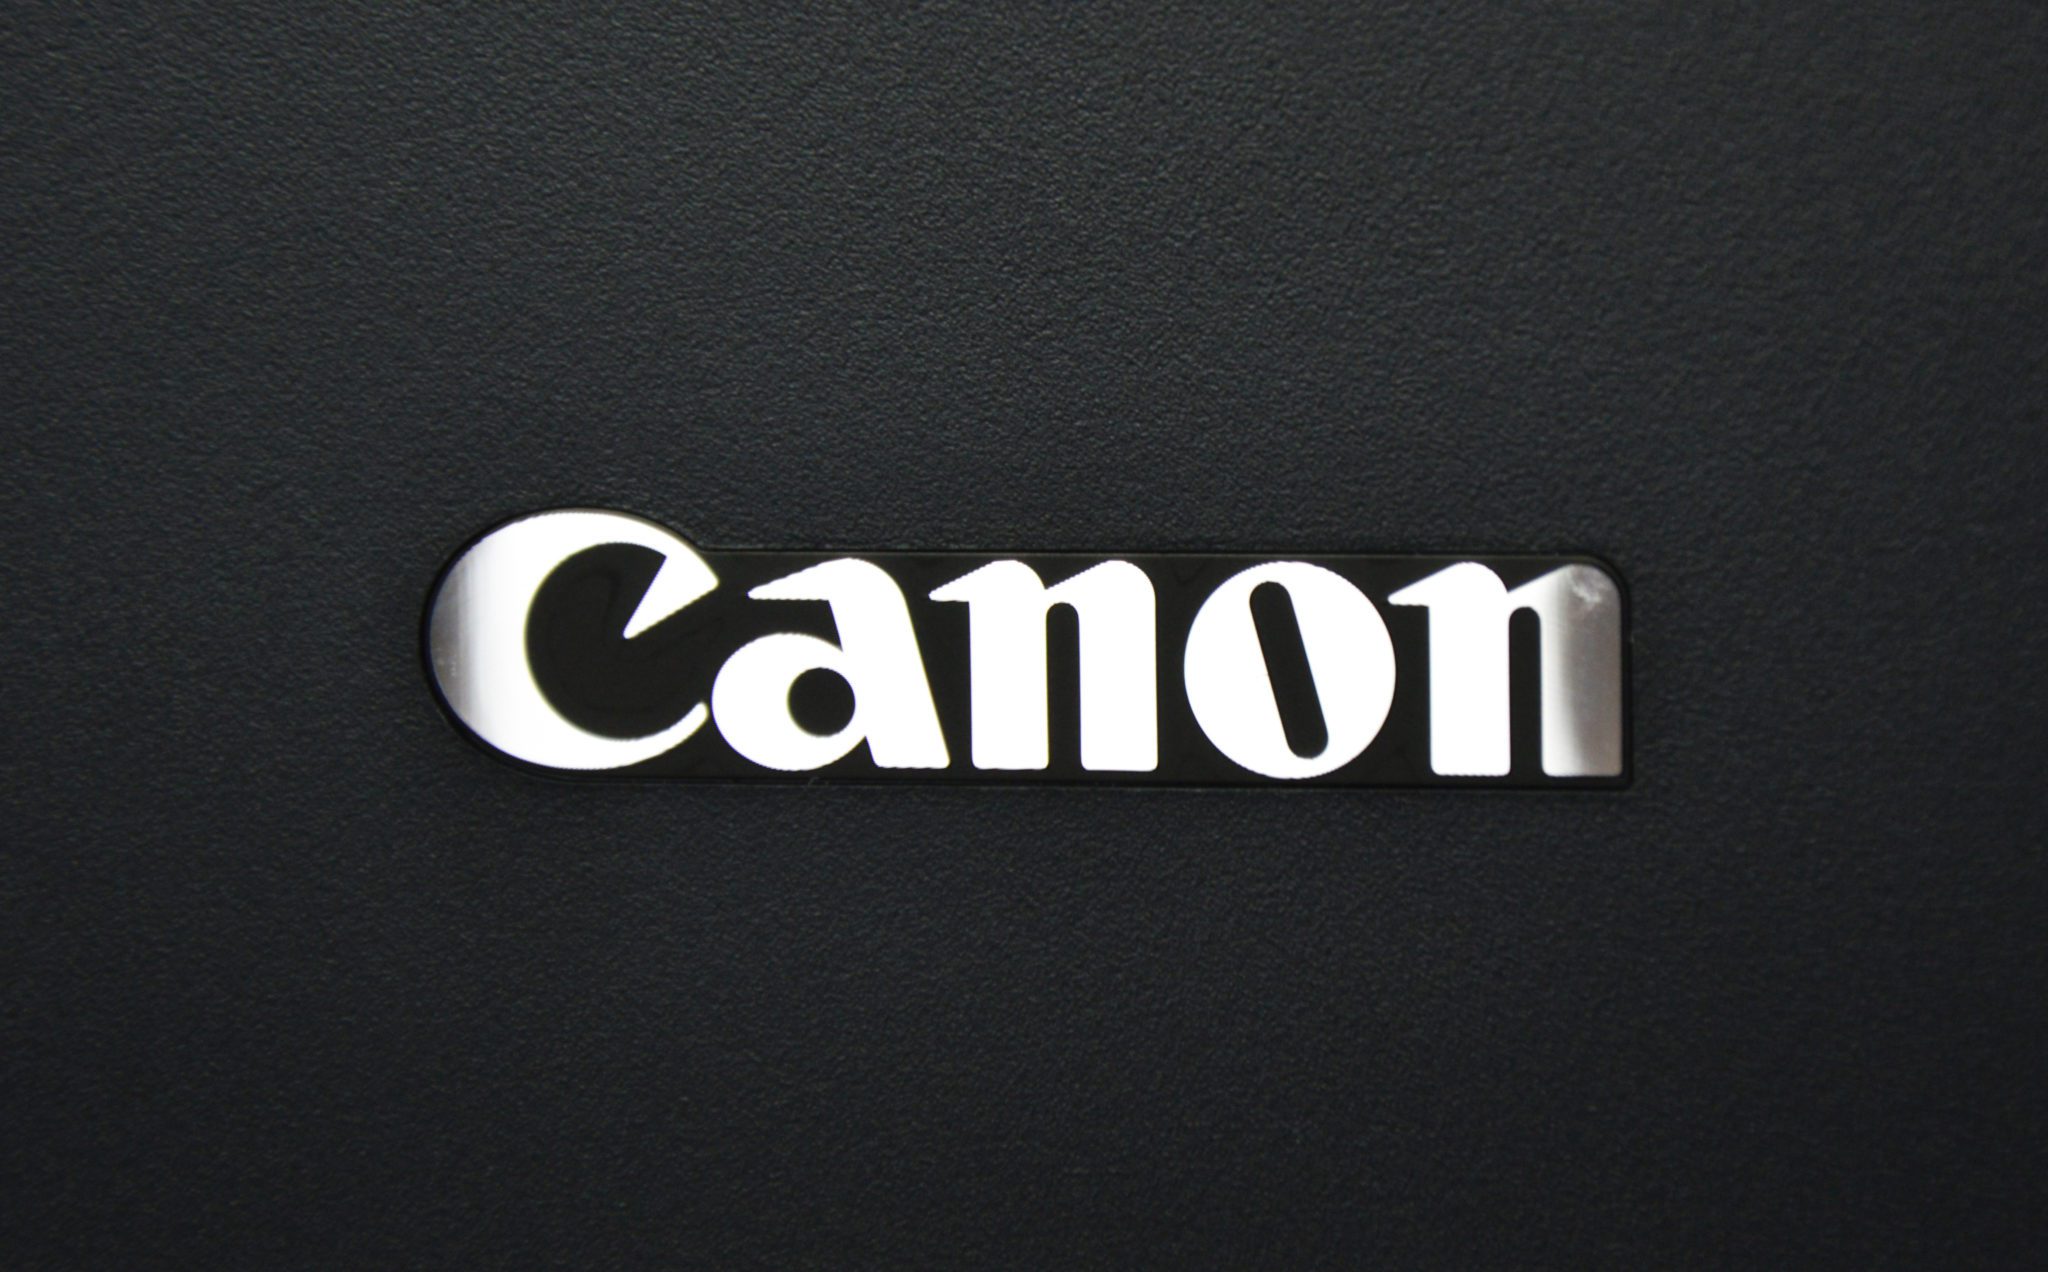  Canon prezintă viitorul securităţii documentelor